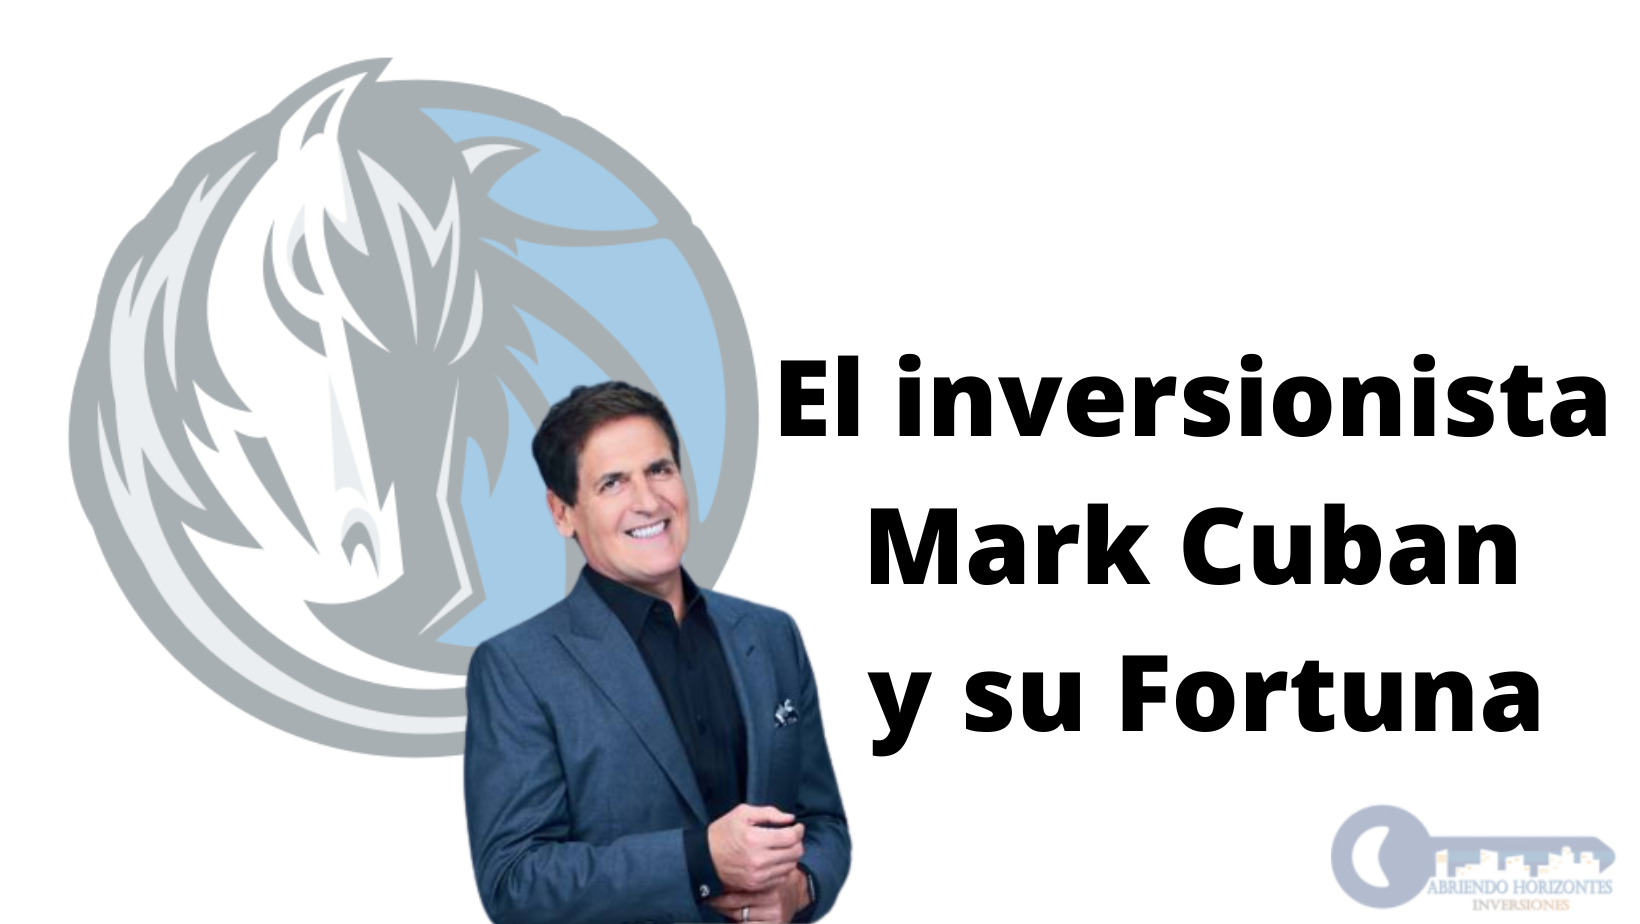 El inversionista Mark Cuban